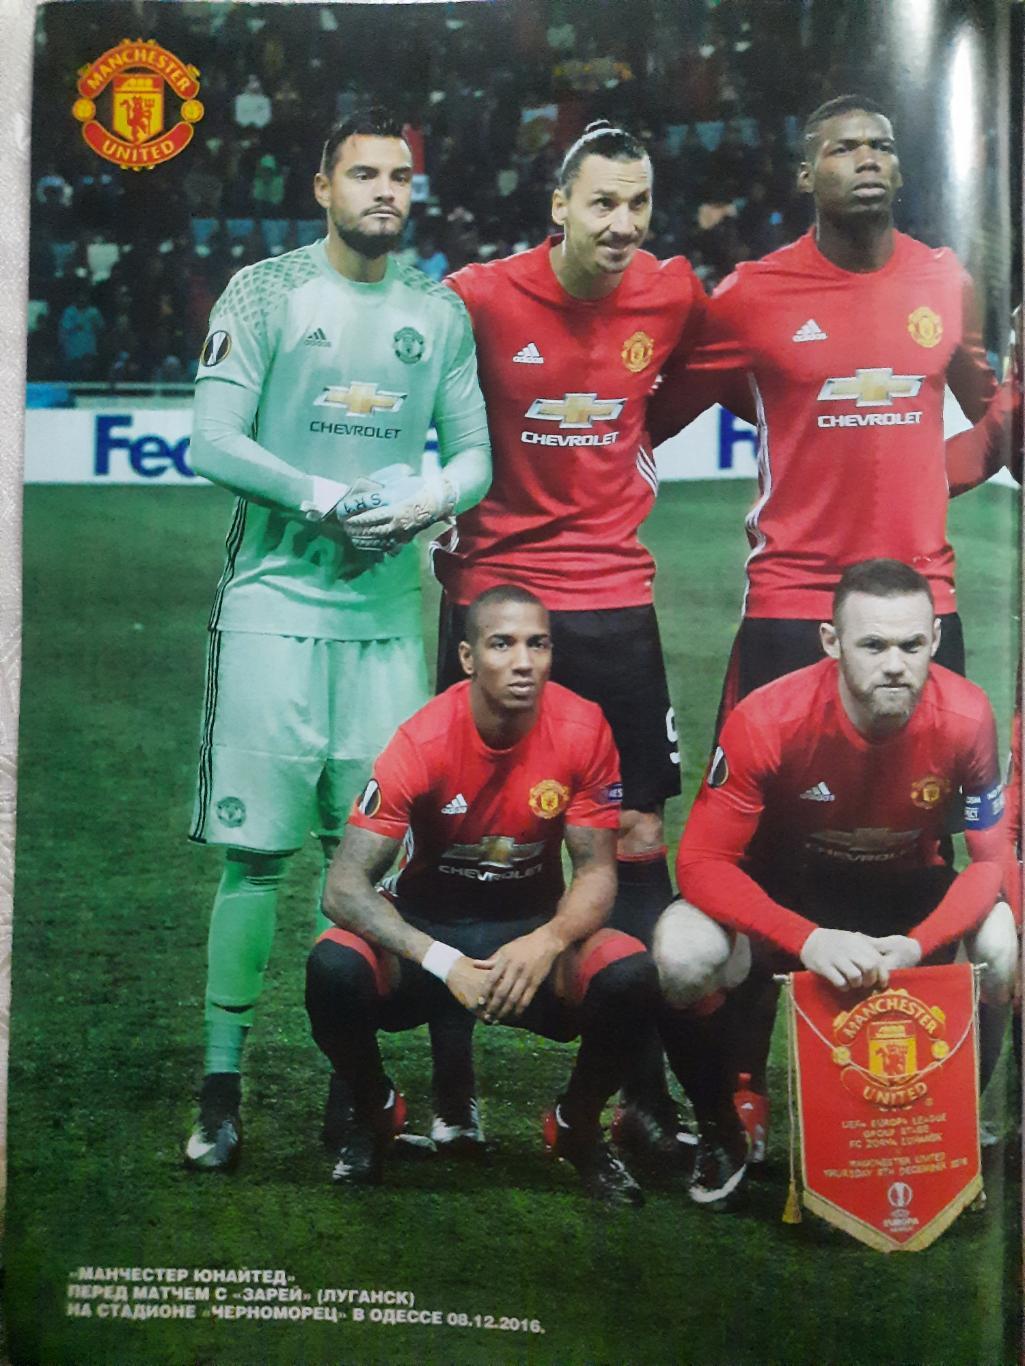 еженедельник Футбол #97 2016, постеры: Манчестер Юнайтед, Погба и Ибрагимович... 1